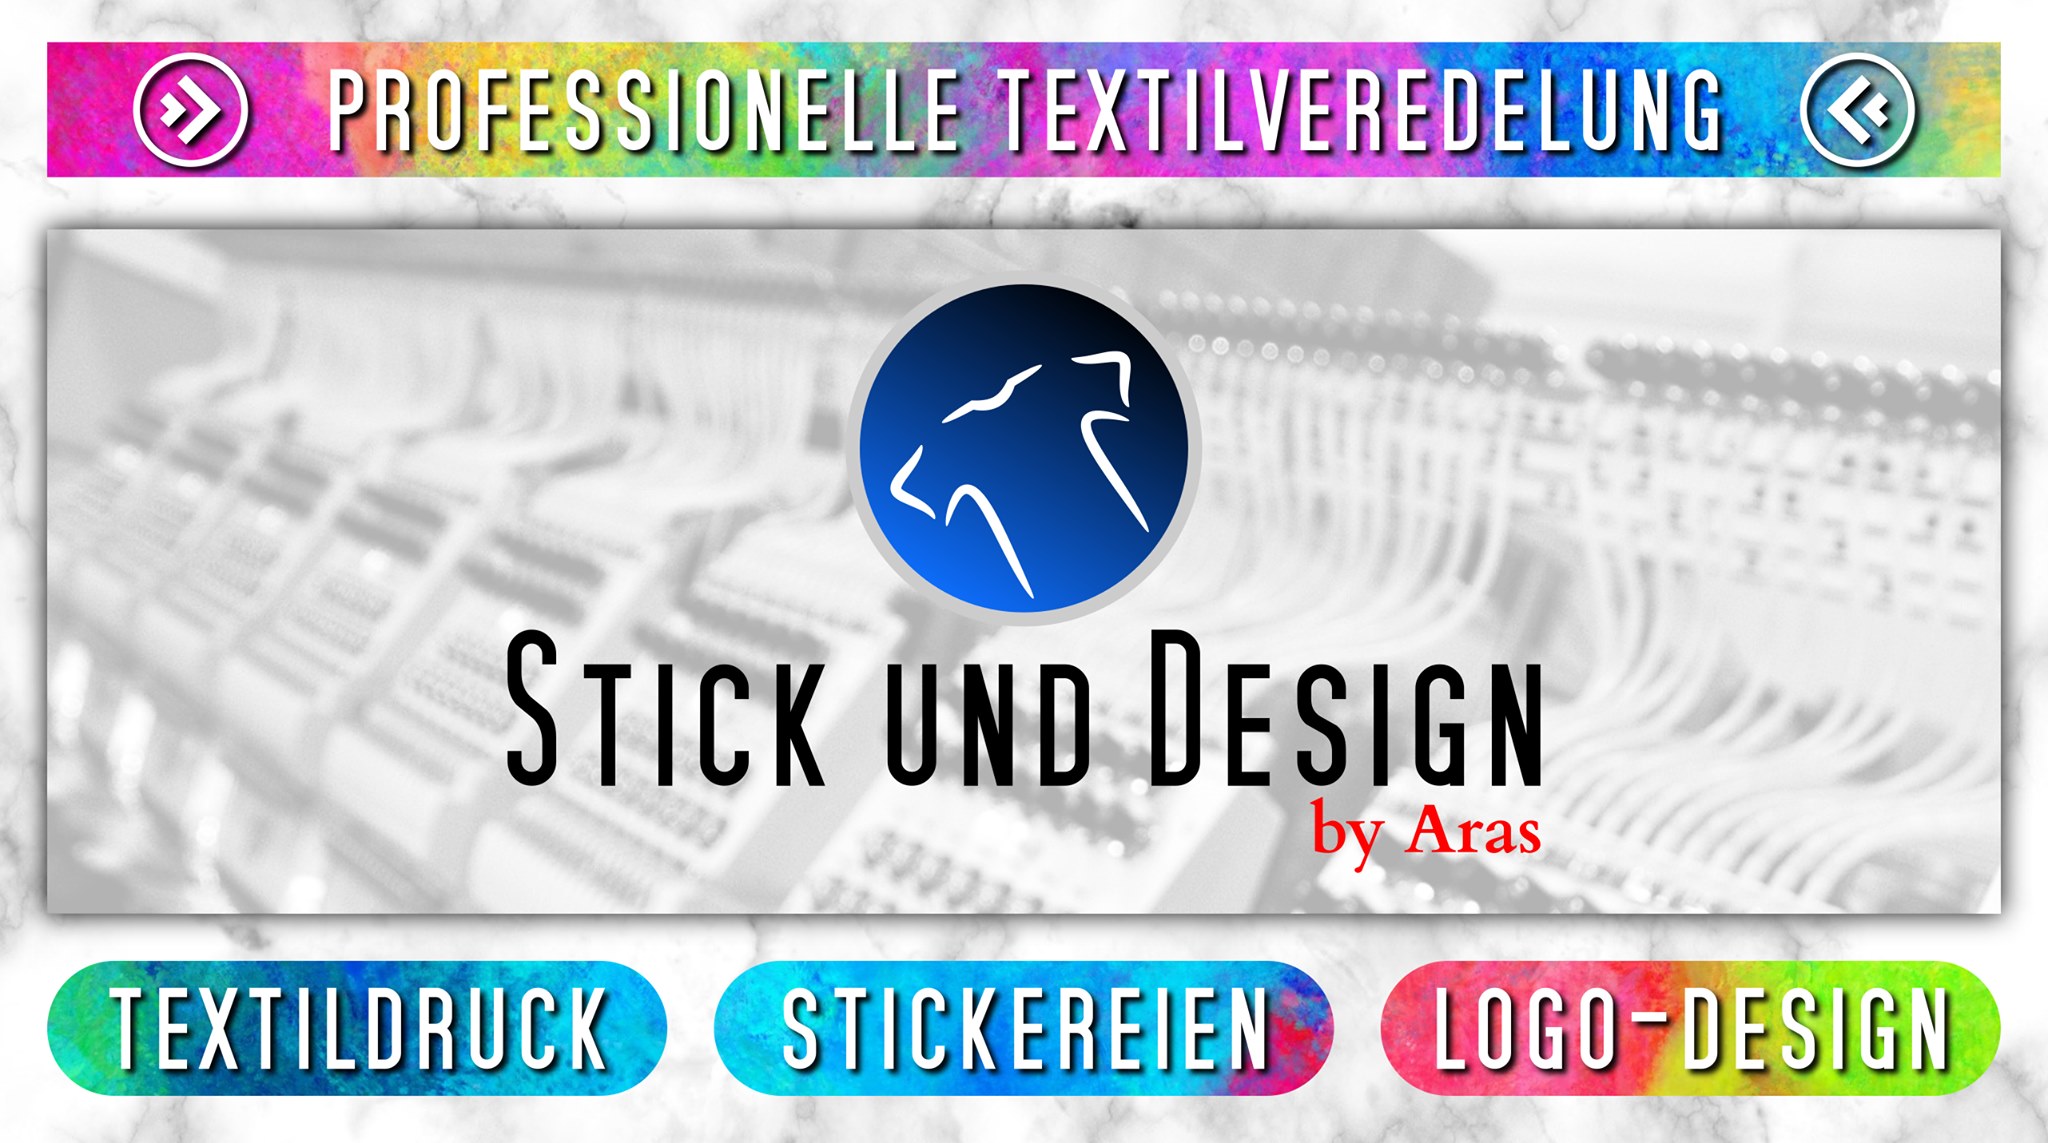 Stick und Design by Aras